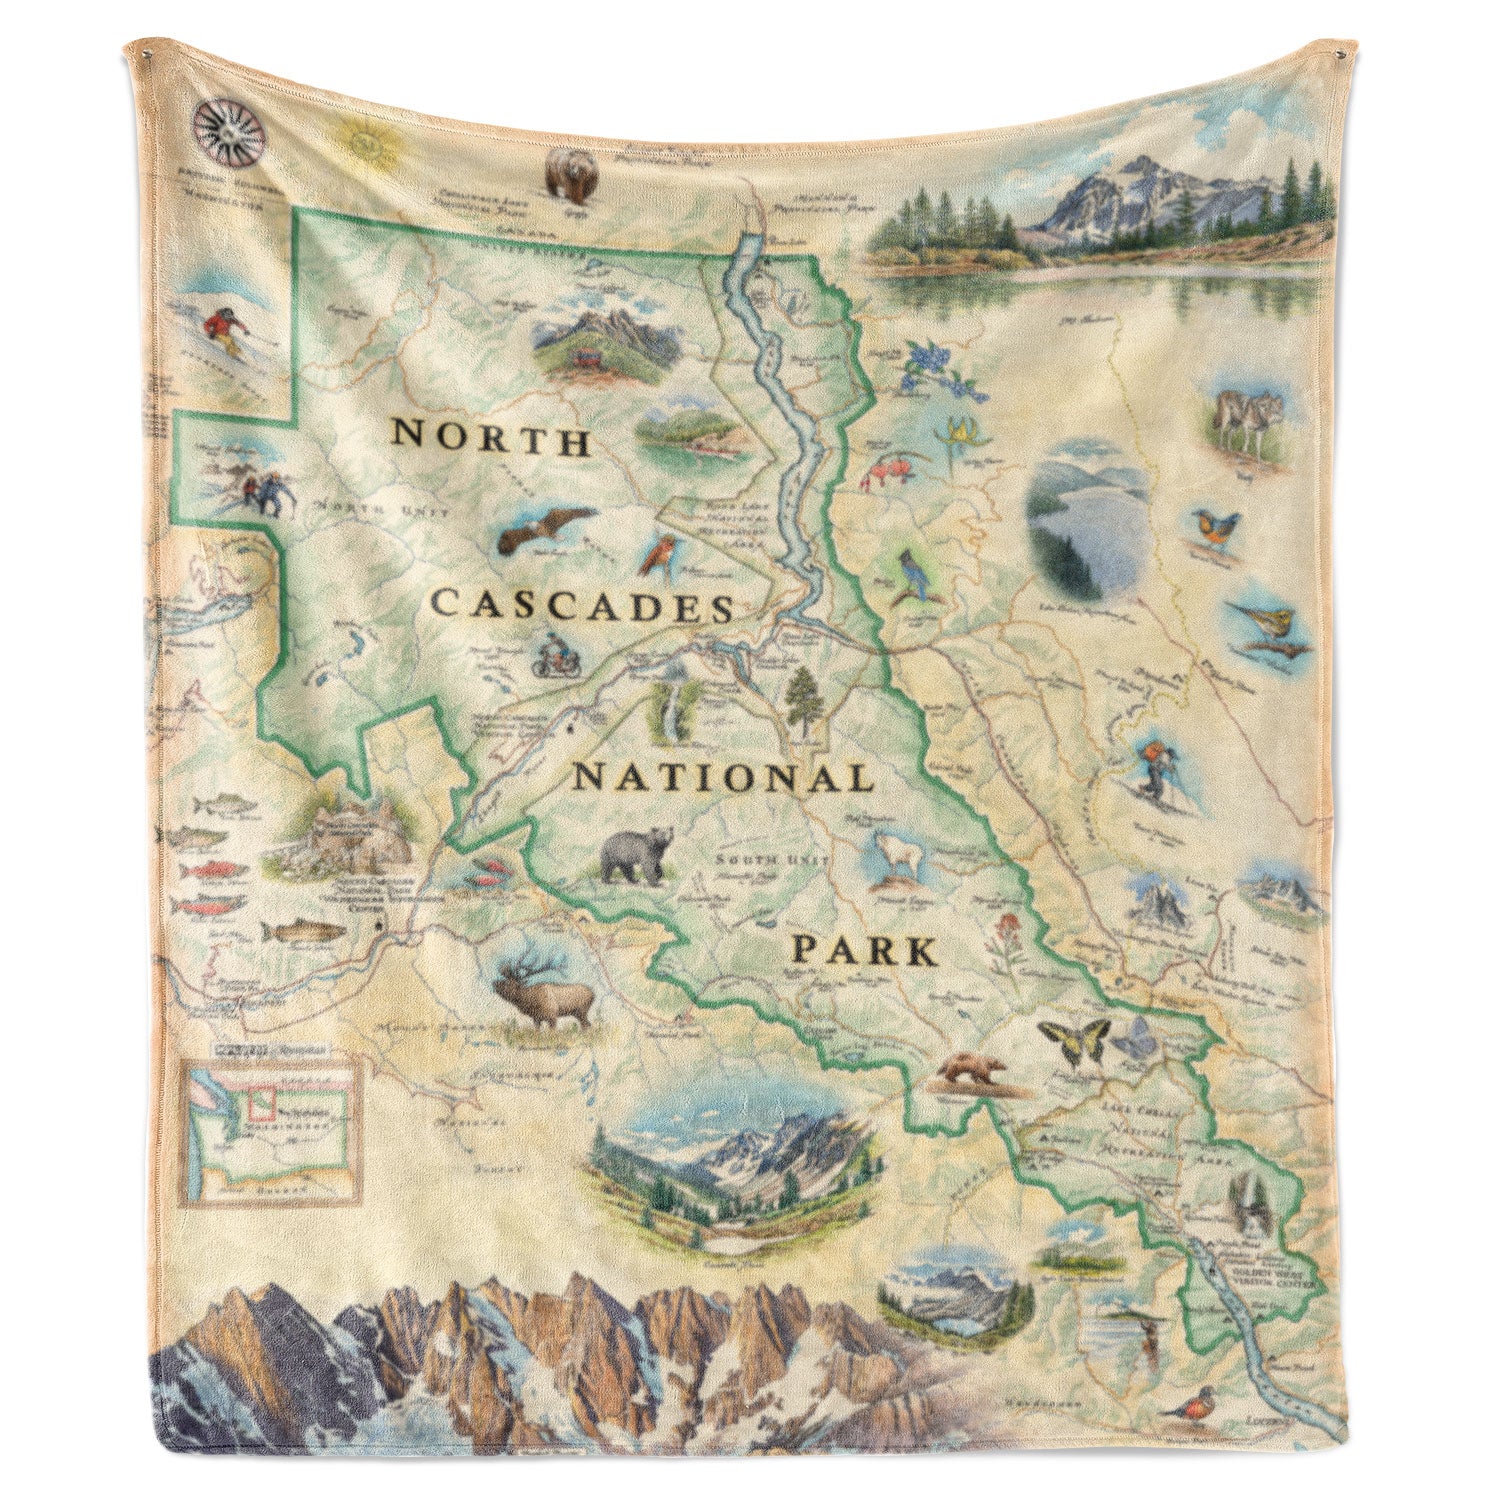 Hanging fleece blanket depicting a North Cascades National Park map. Blanket measures 58